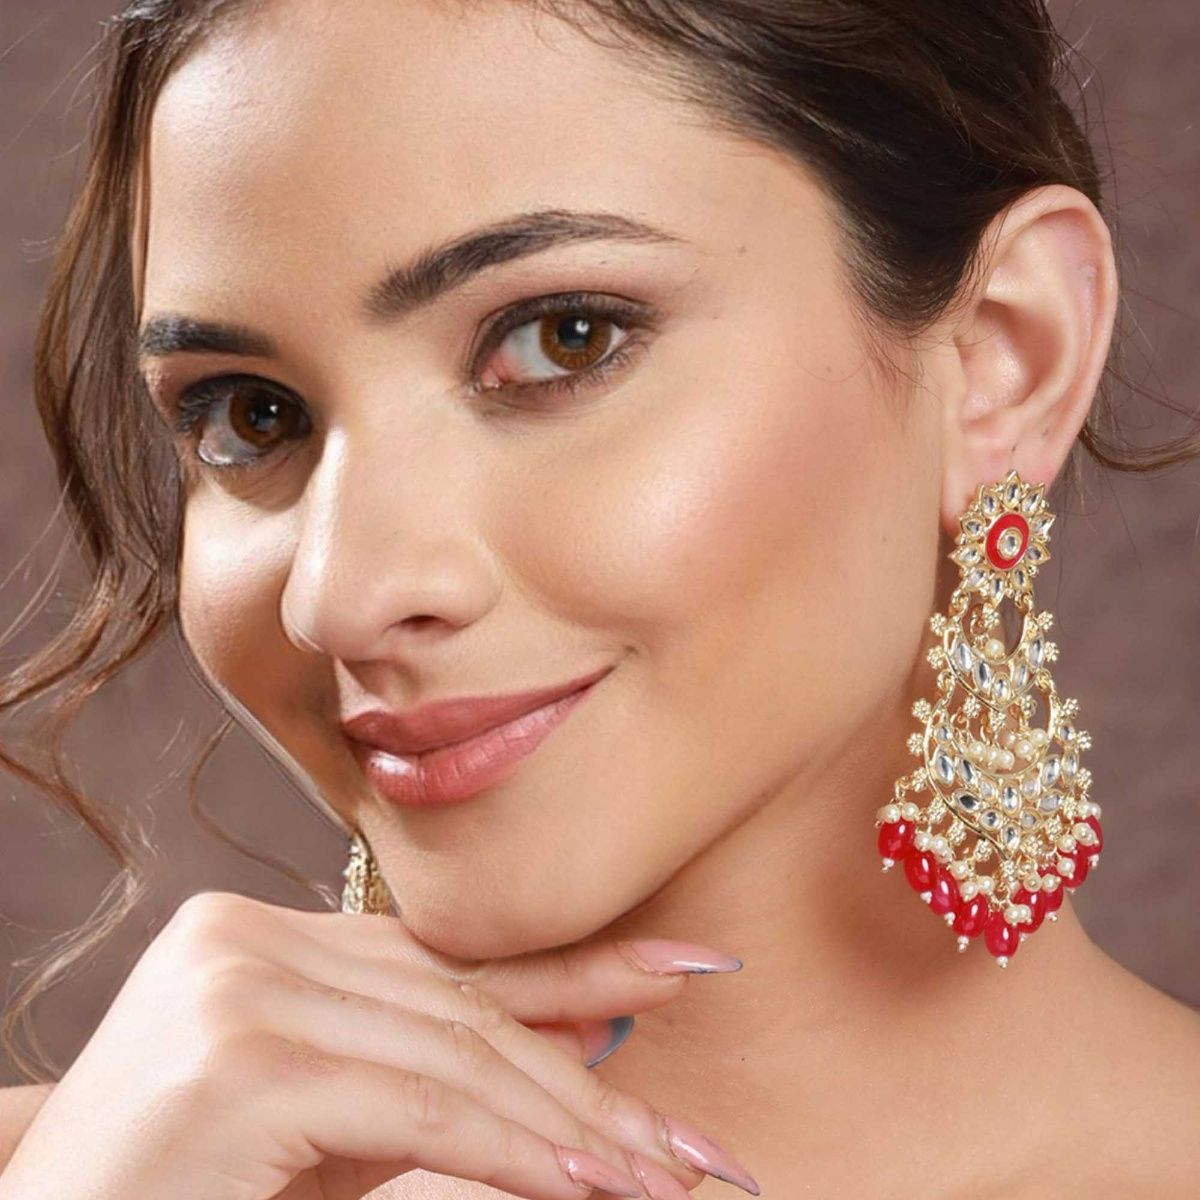 Buy Onwards  Upwards Black Onyx  Pearl Chandelier Earrings Online in India   Zariin